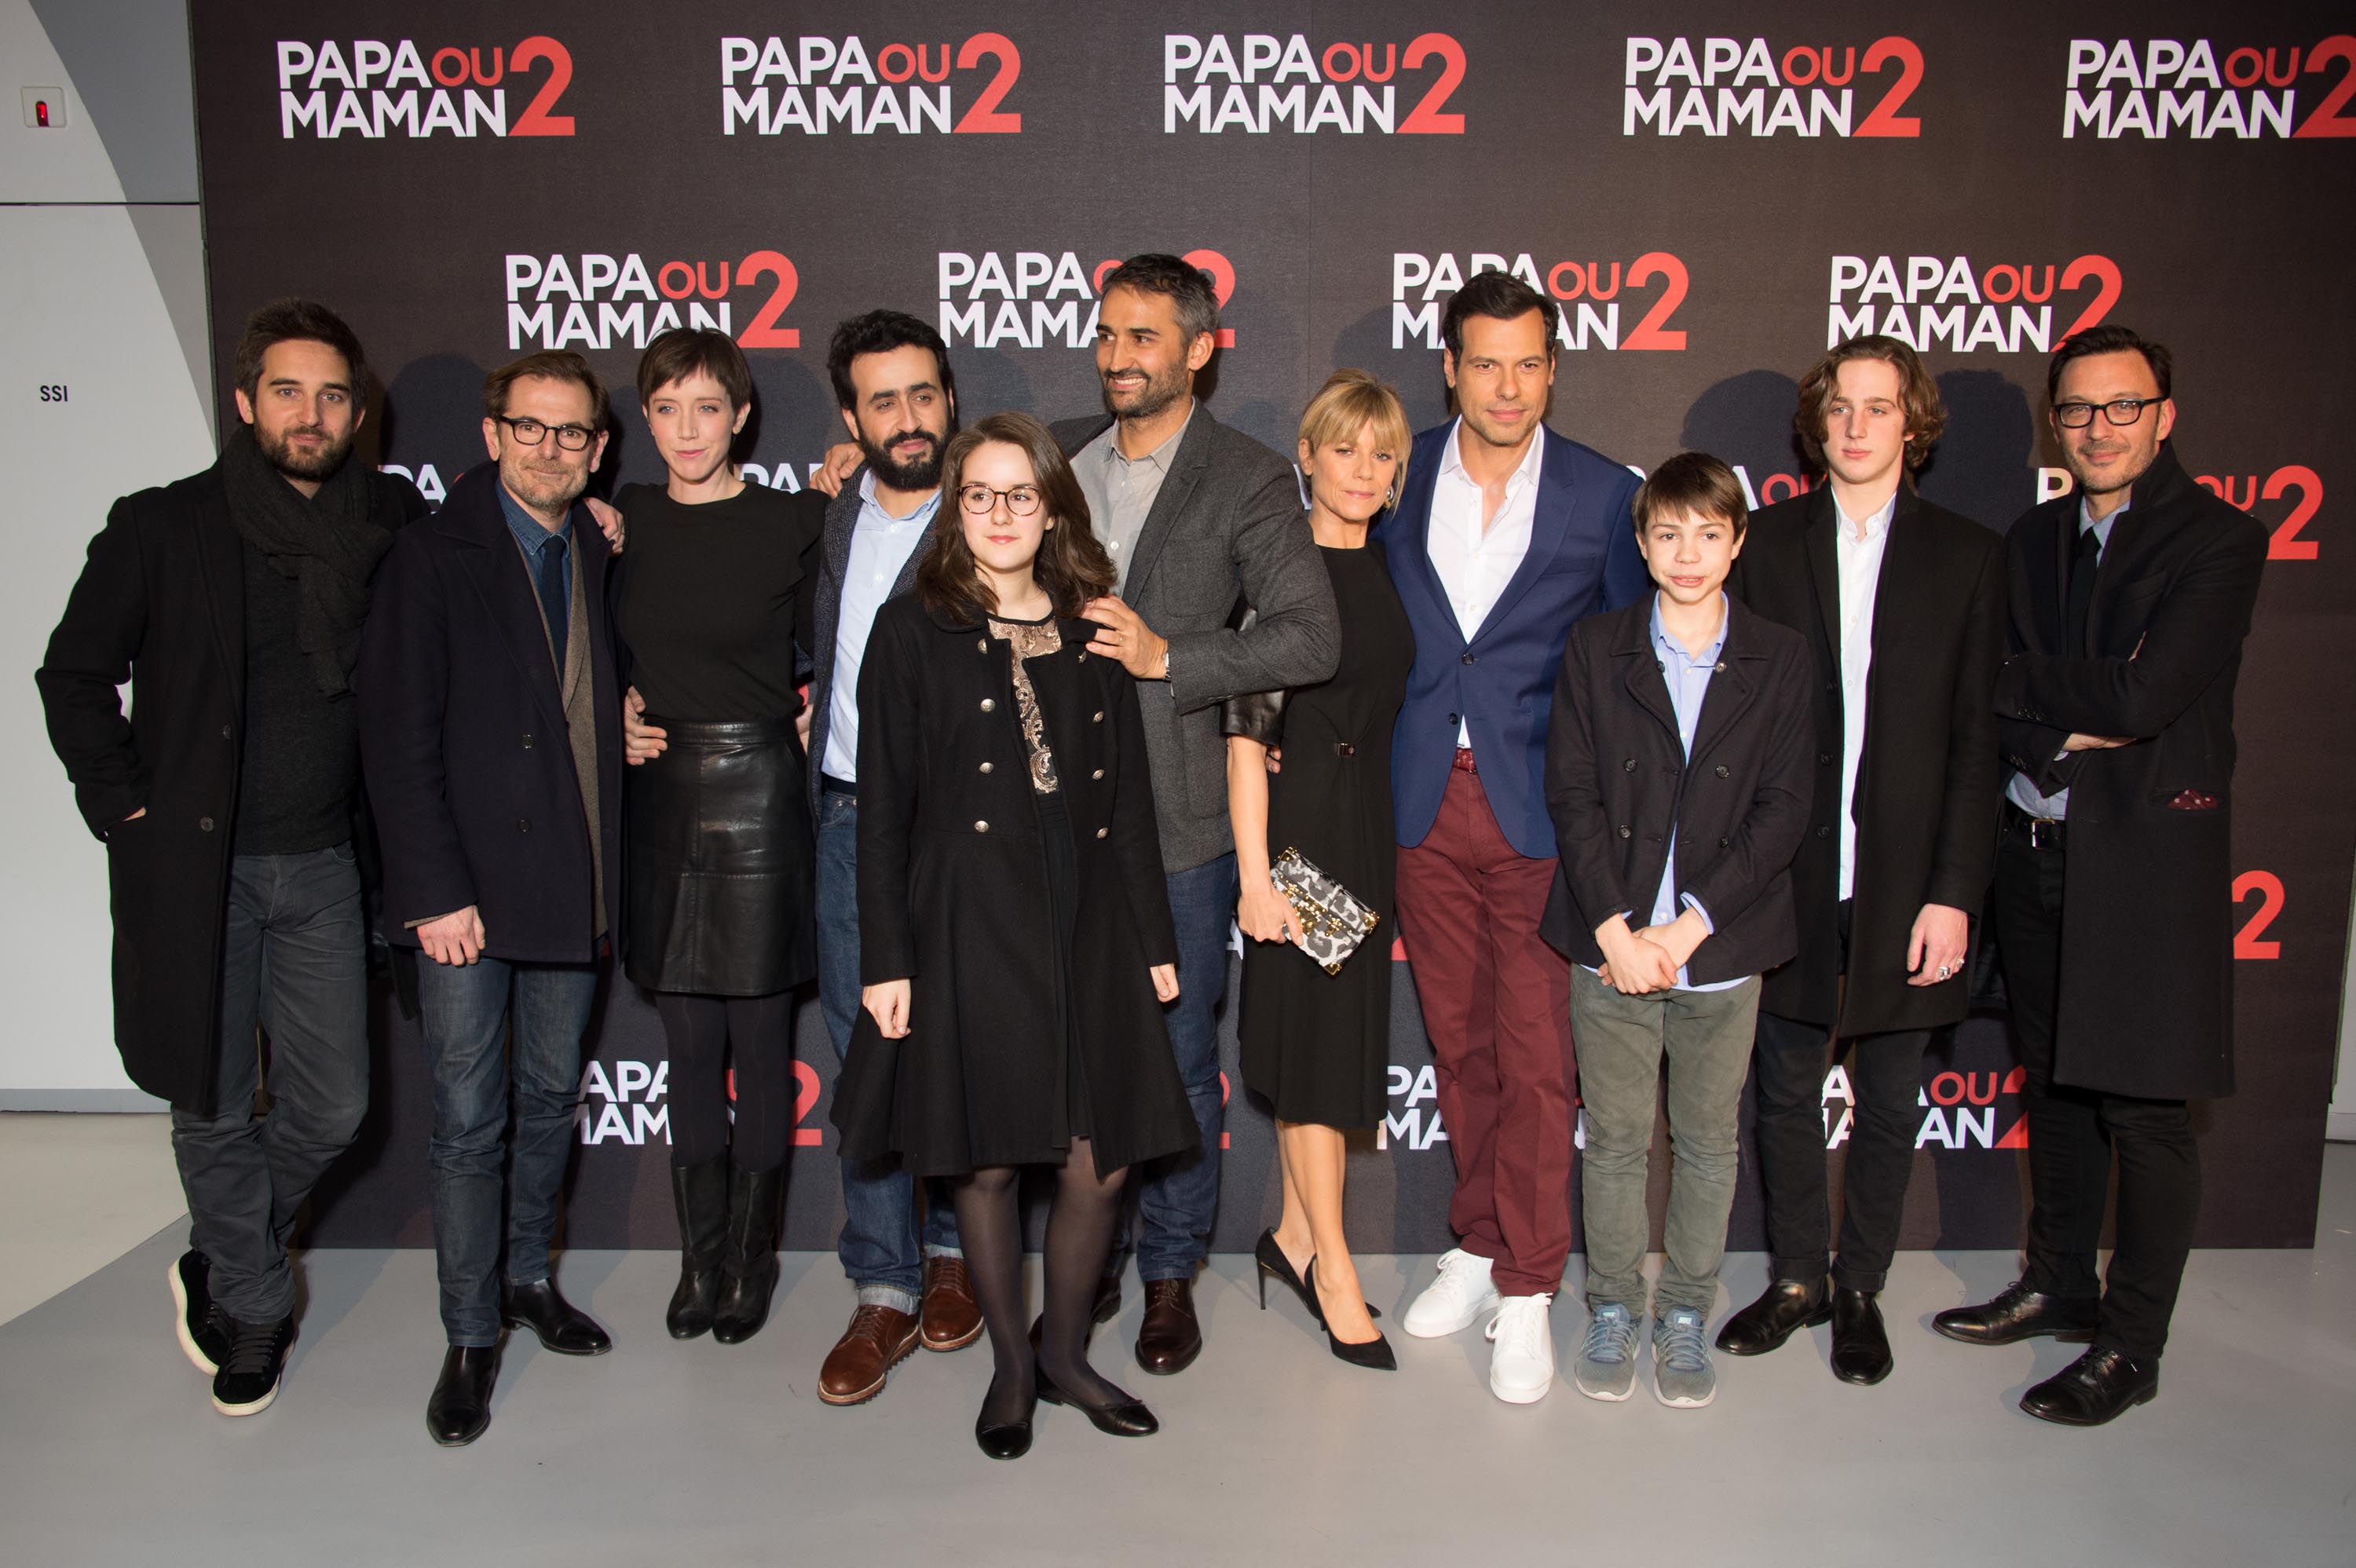 Sara Giraudeau attends the ‘Papa ou Maman 2’ Paris Premiere